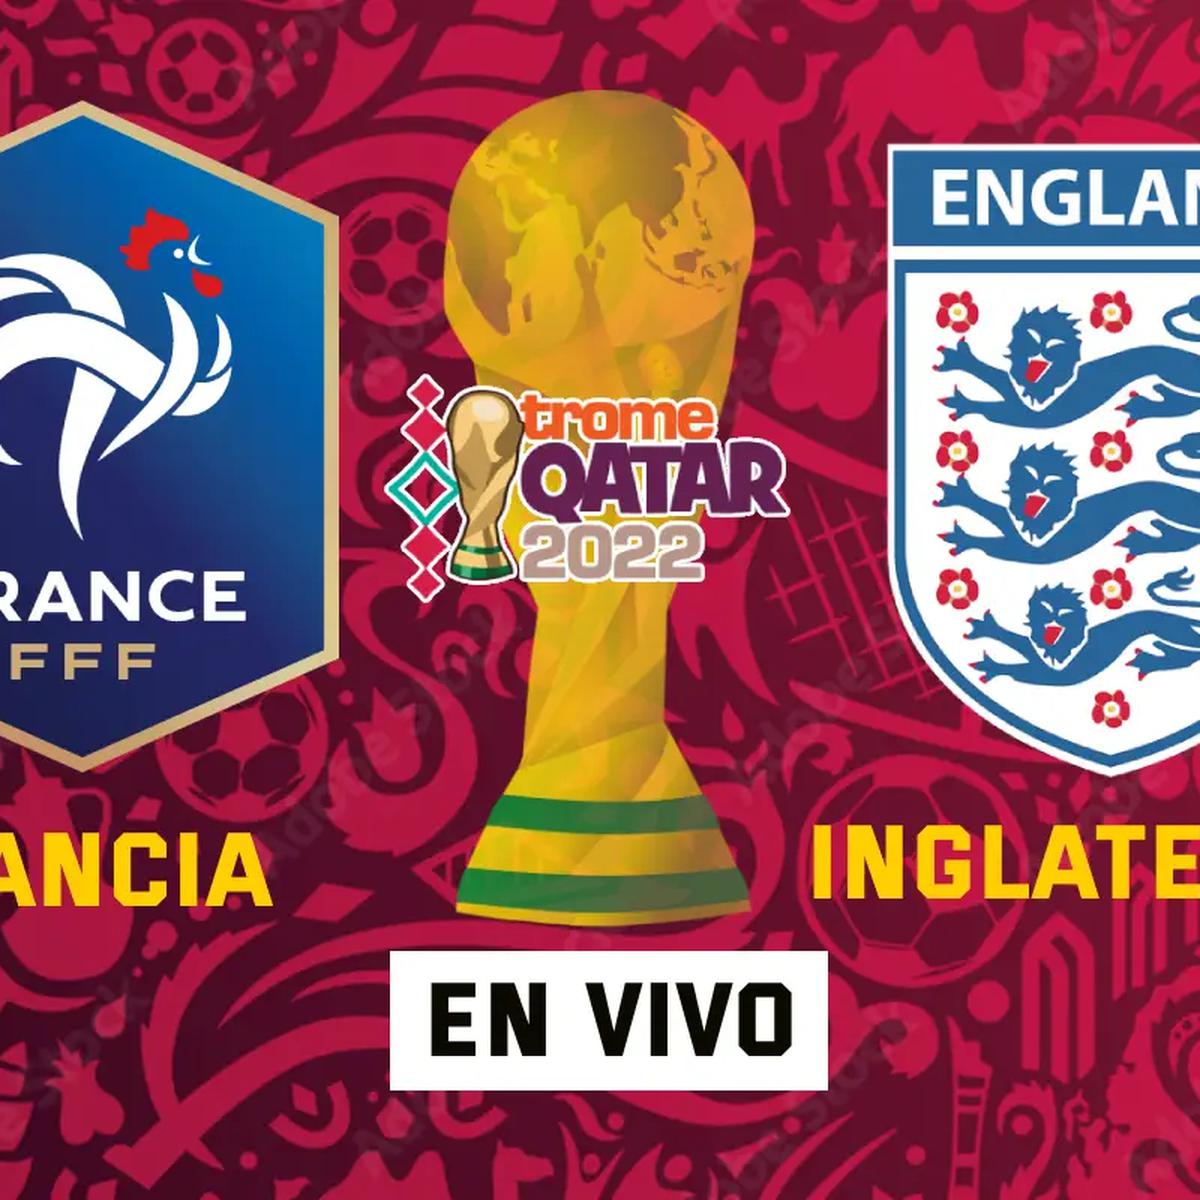 Ver libre FÚTBOL HD, Francia vs. Inglaterra EN VIVO ONLINE GRATIS EN DIRECTO | Mundial Qatar 2022 | Fútbol Libre | Tarjeta Roja | Pirlo TV | Fútbol para todos | TyC Sports | Azteca 7 | Canal 5 | Caracol | DirecTV | MUNDIAL |